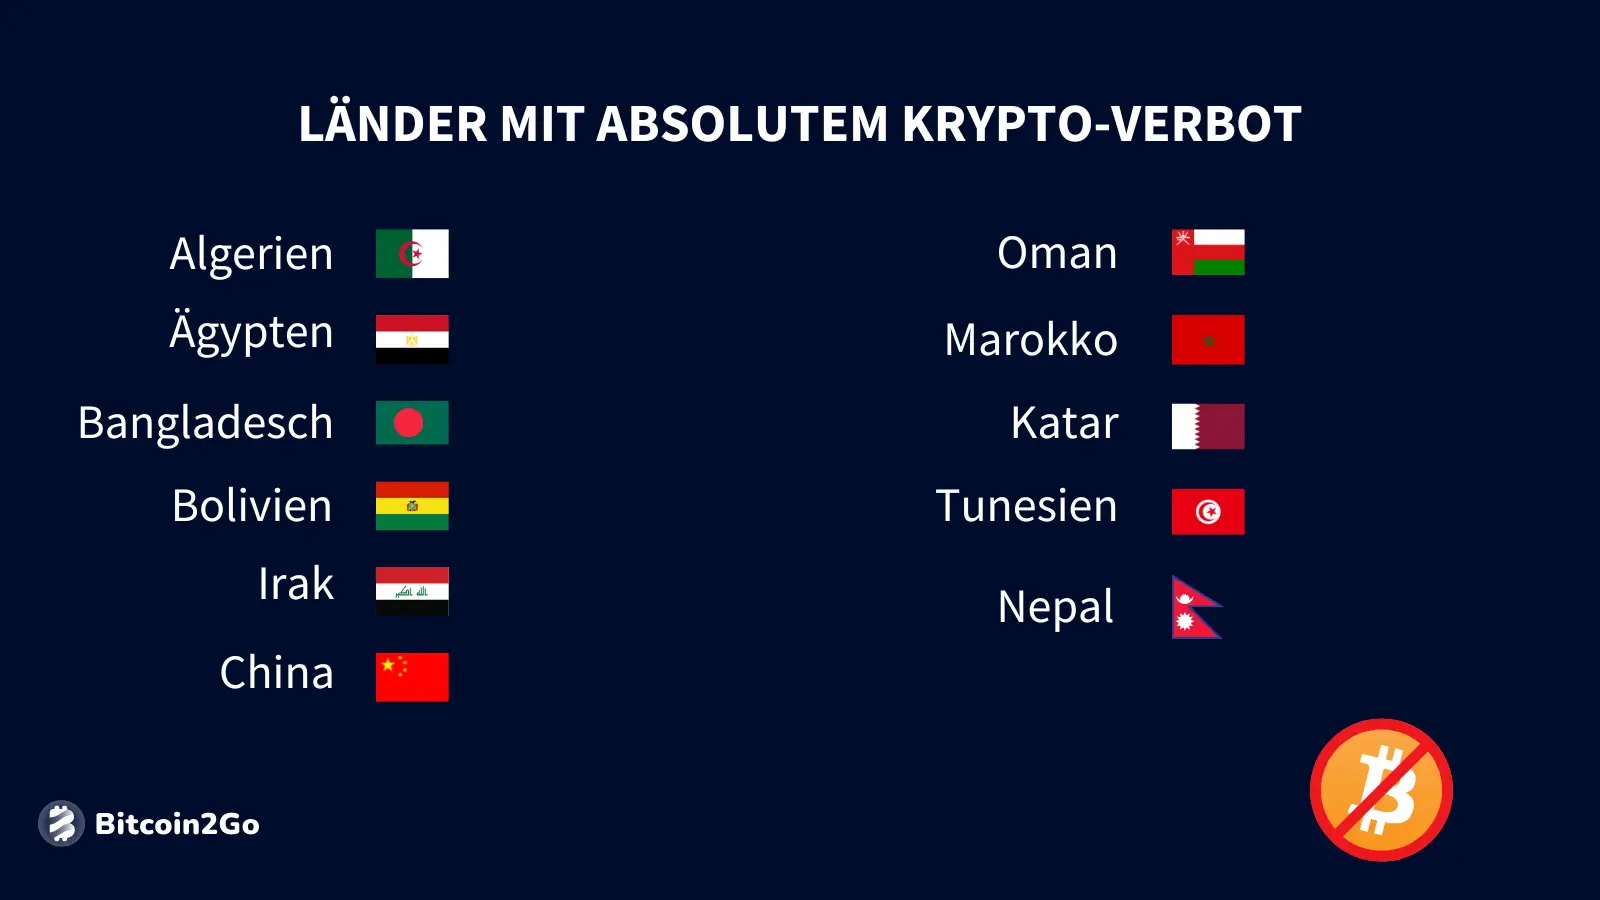 Länder mit absolutem Krypto-Verbot